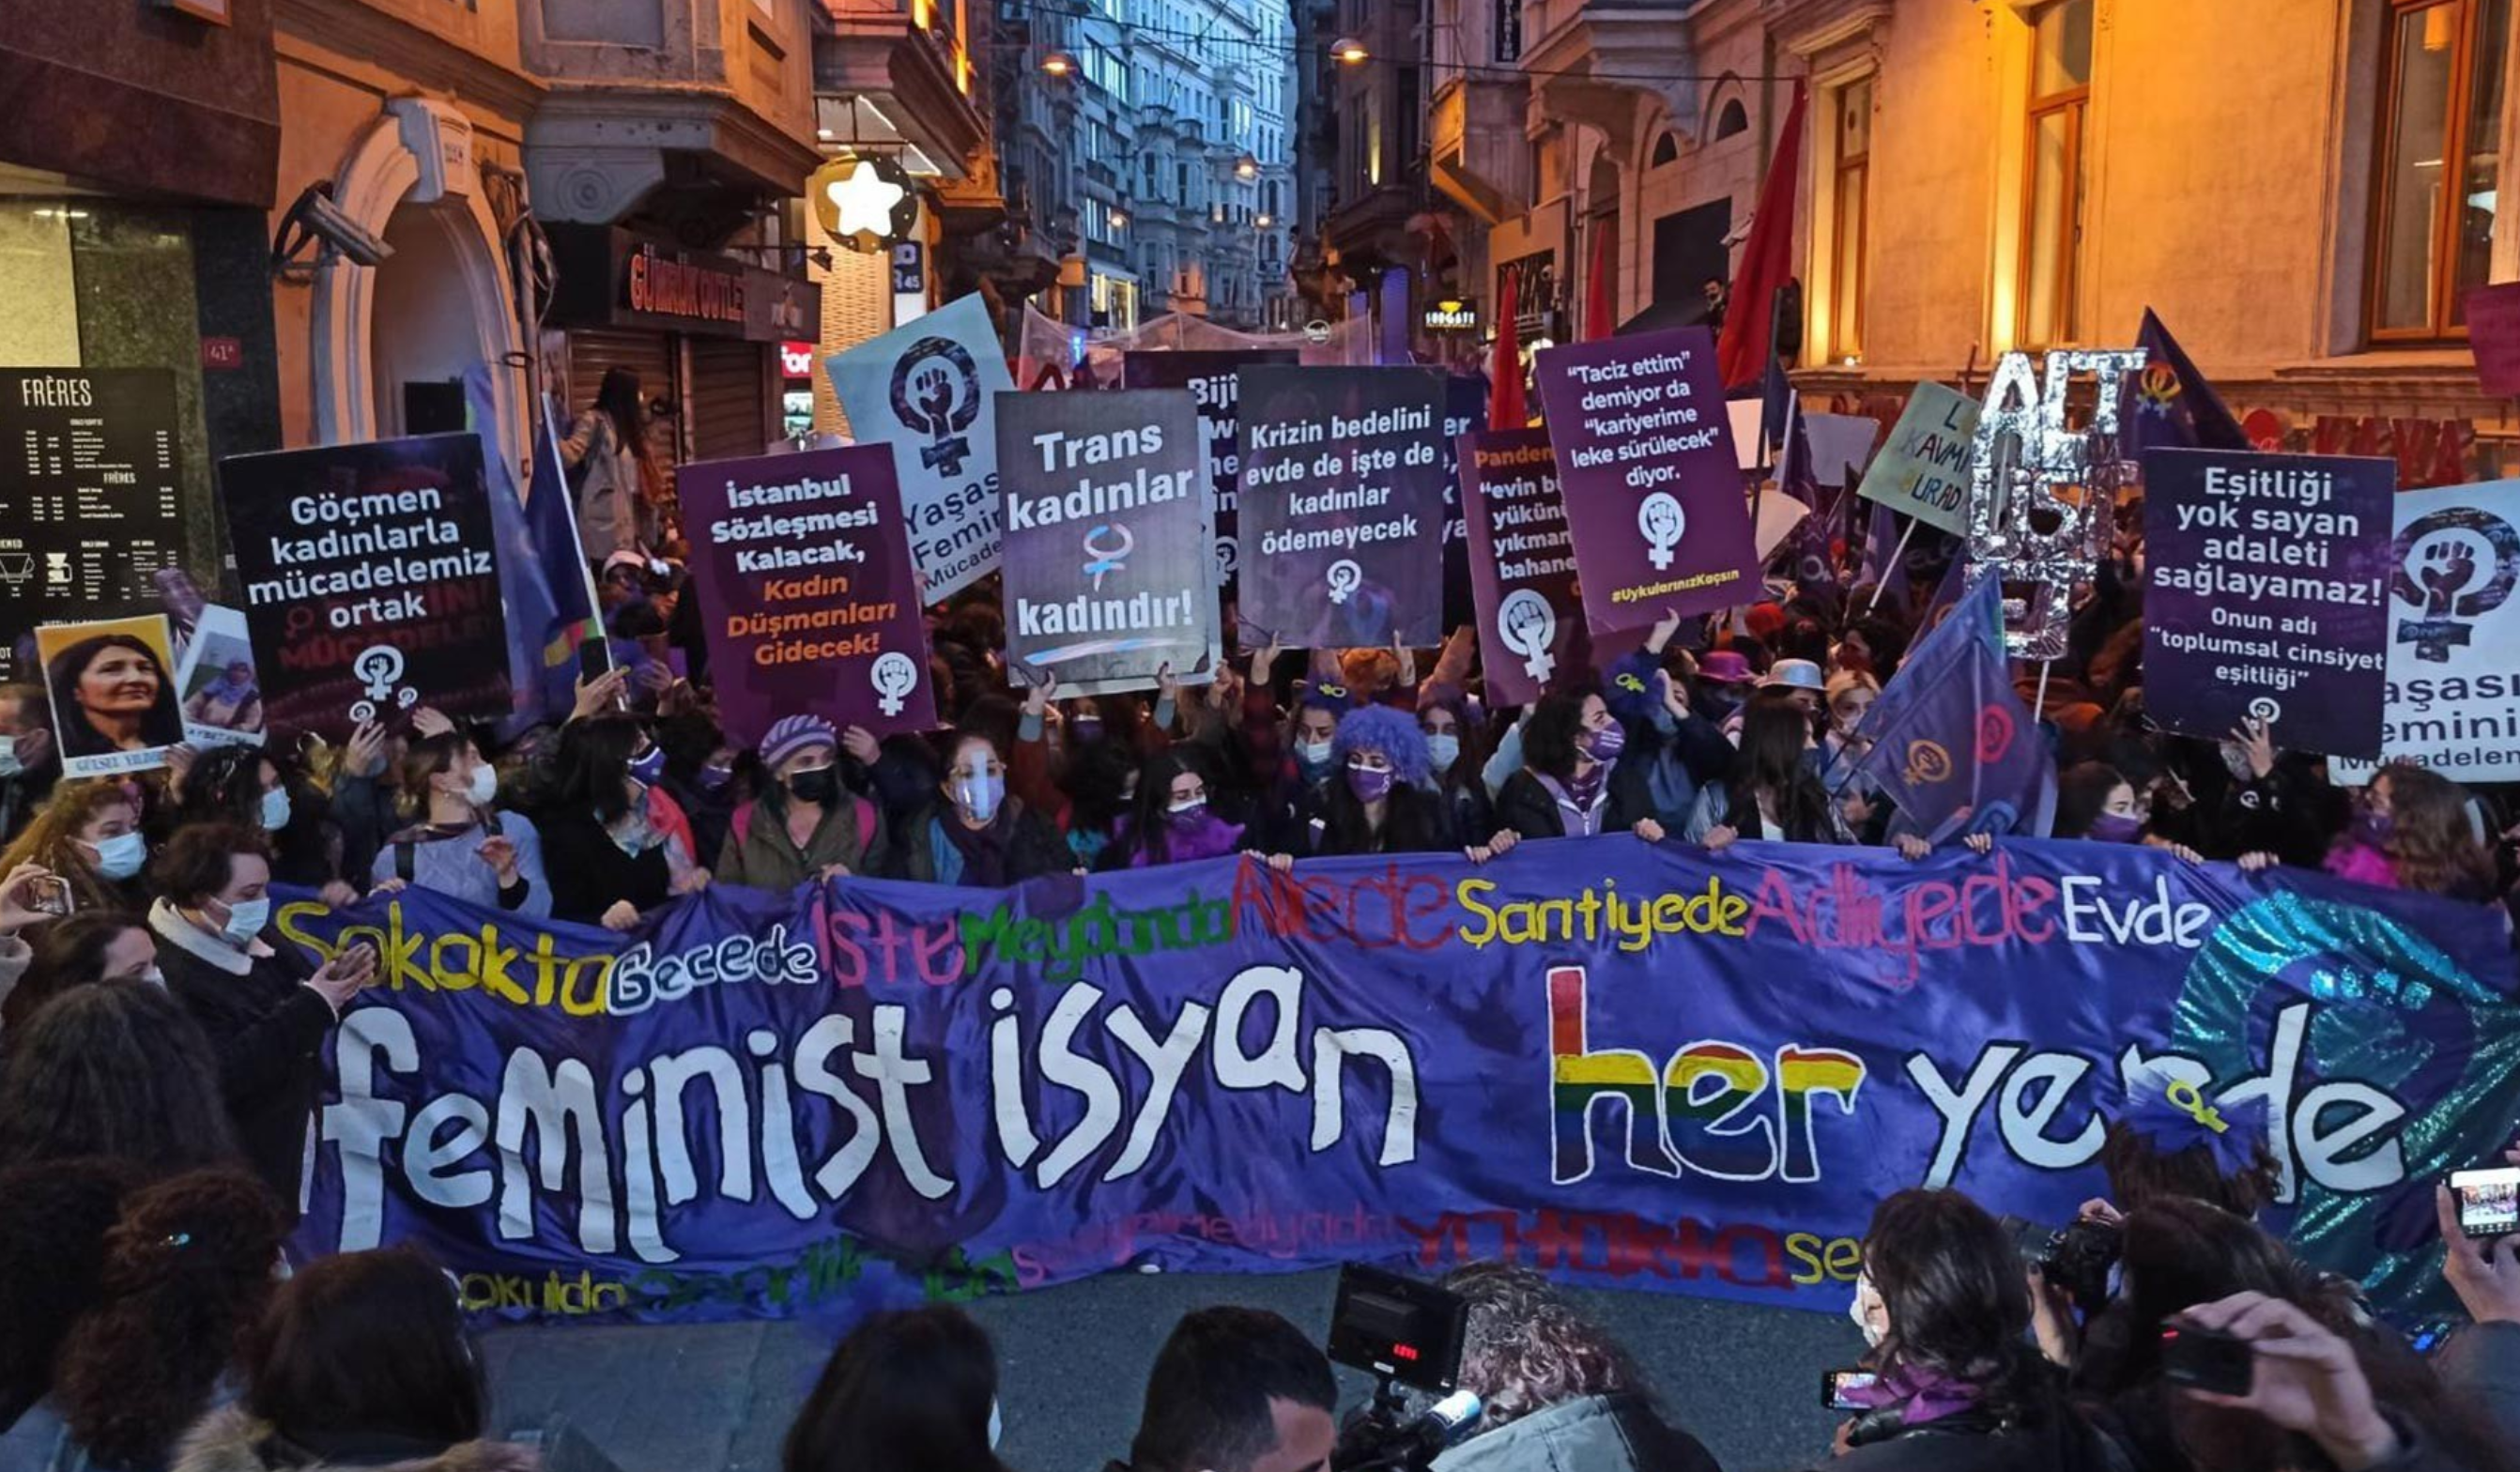 Feminist Gece Yürüyüşü’ne katıldıkları için yargılanan 33’ü kadın 35 kişi hakkında beraat kararı verildi